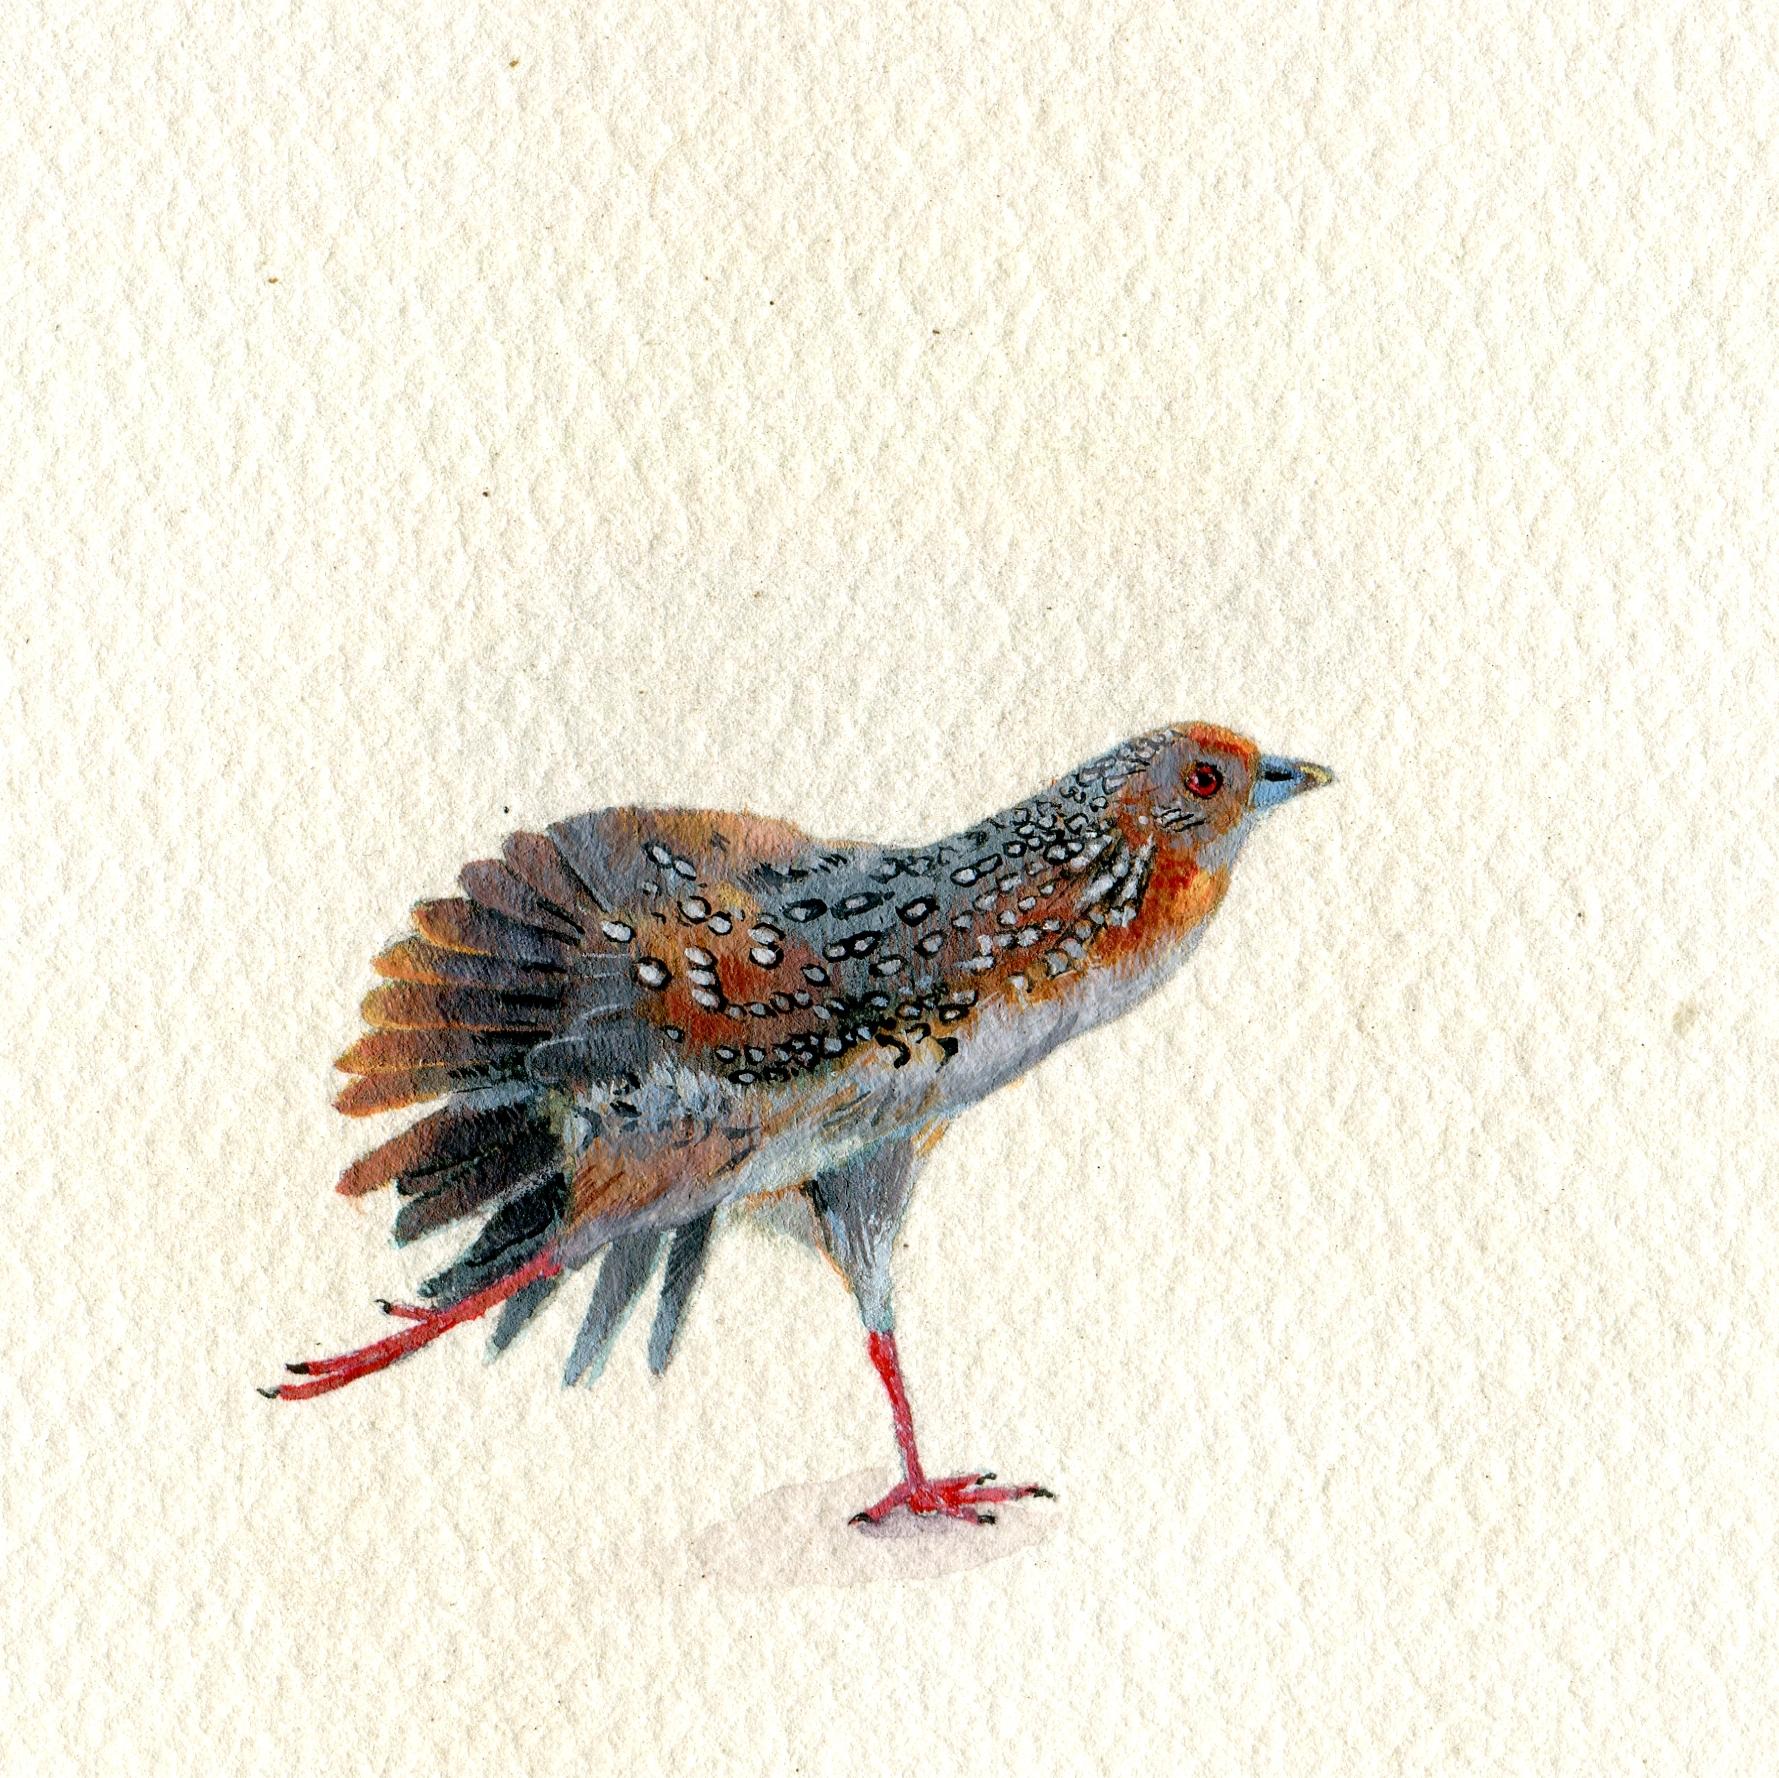 Miniatur-Vogelporträt aus Crake-Gouache auf Papier, realistische Crake-Malerei, 2020